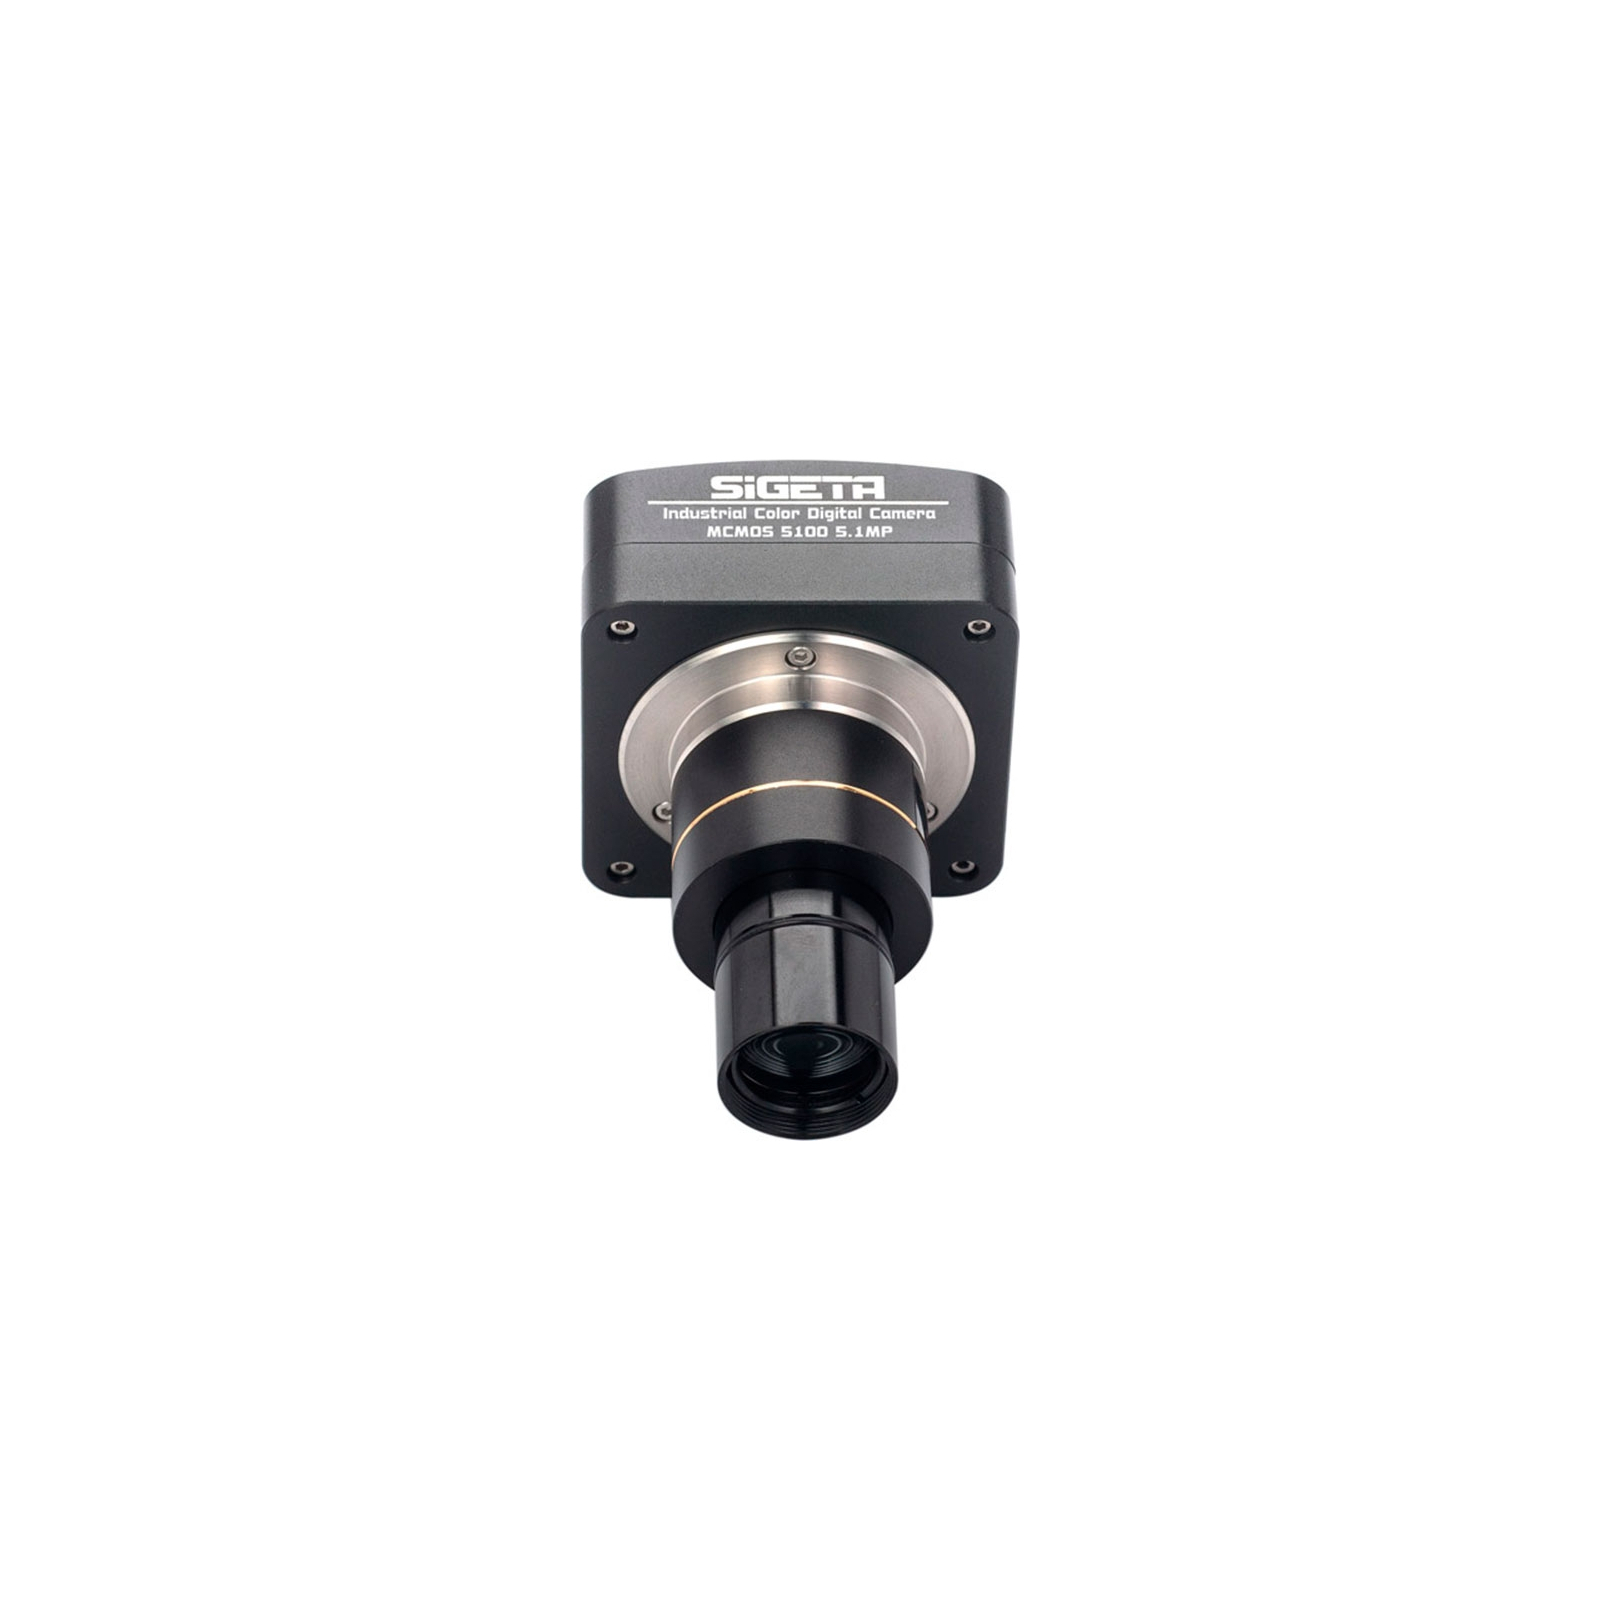 Цифровая камера для микроскопа Sigeta MCMOS 5100 5.1MP USB2.0 (65673) изображение 3